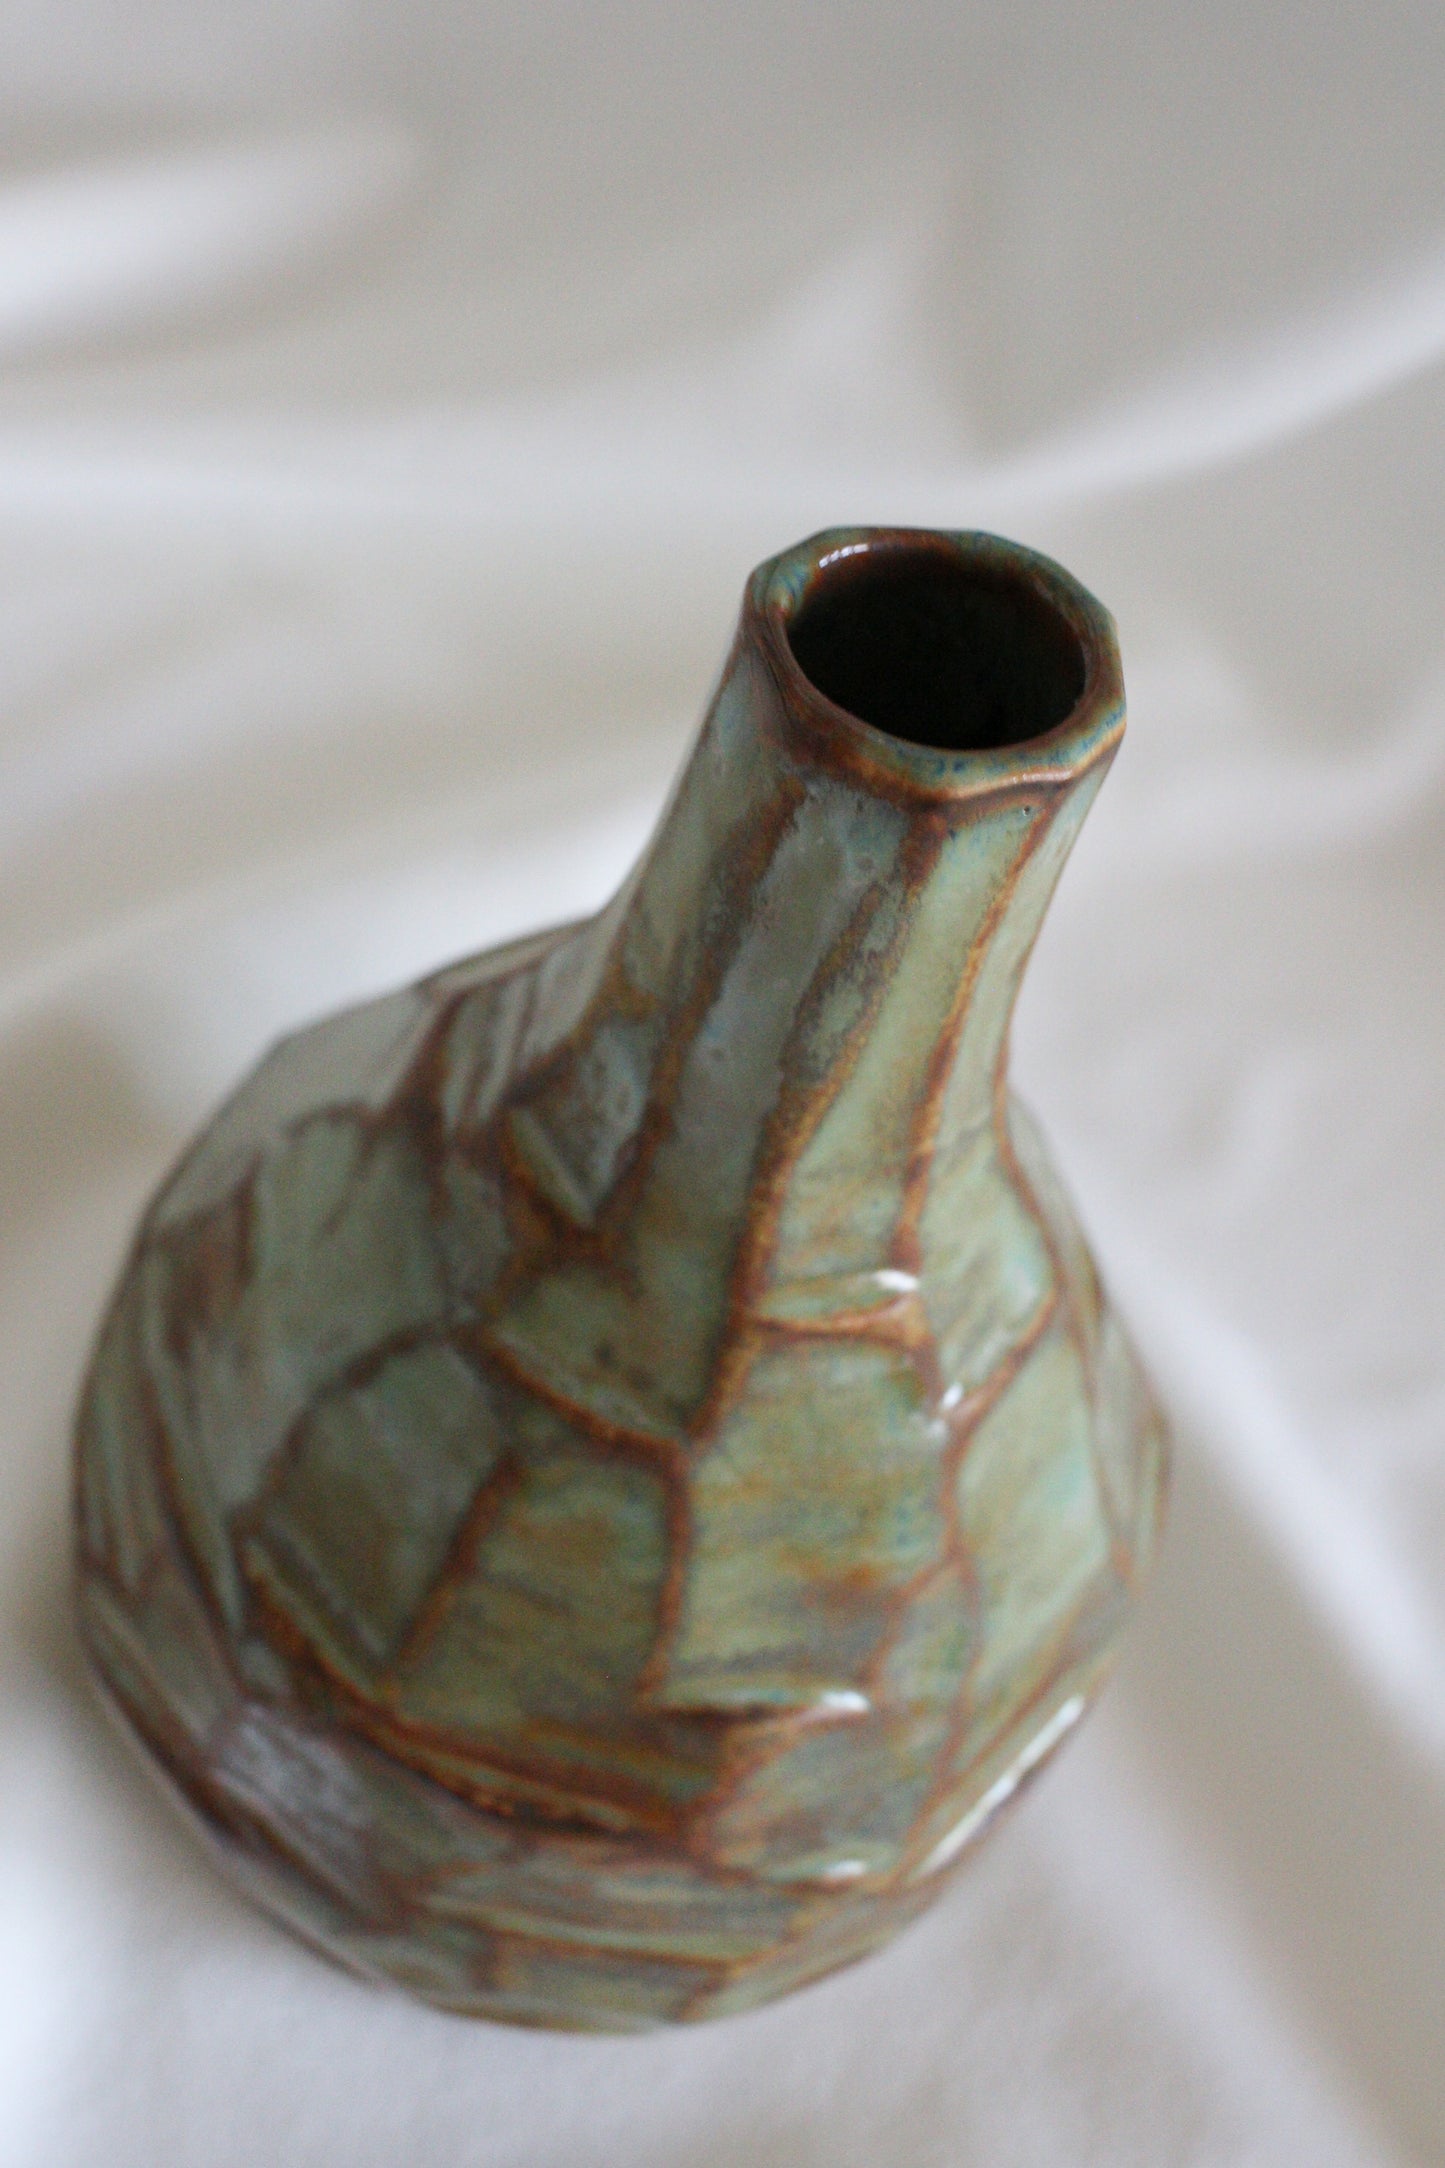 Vase #14